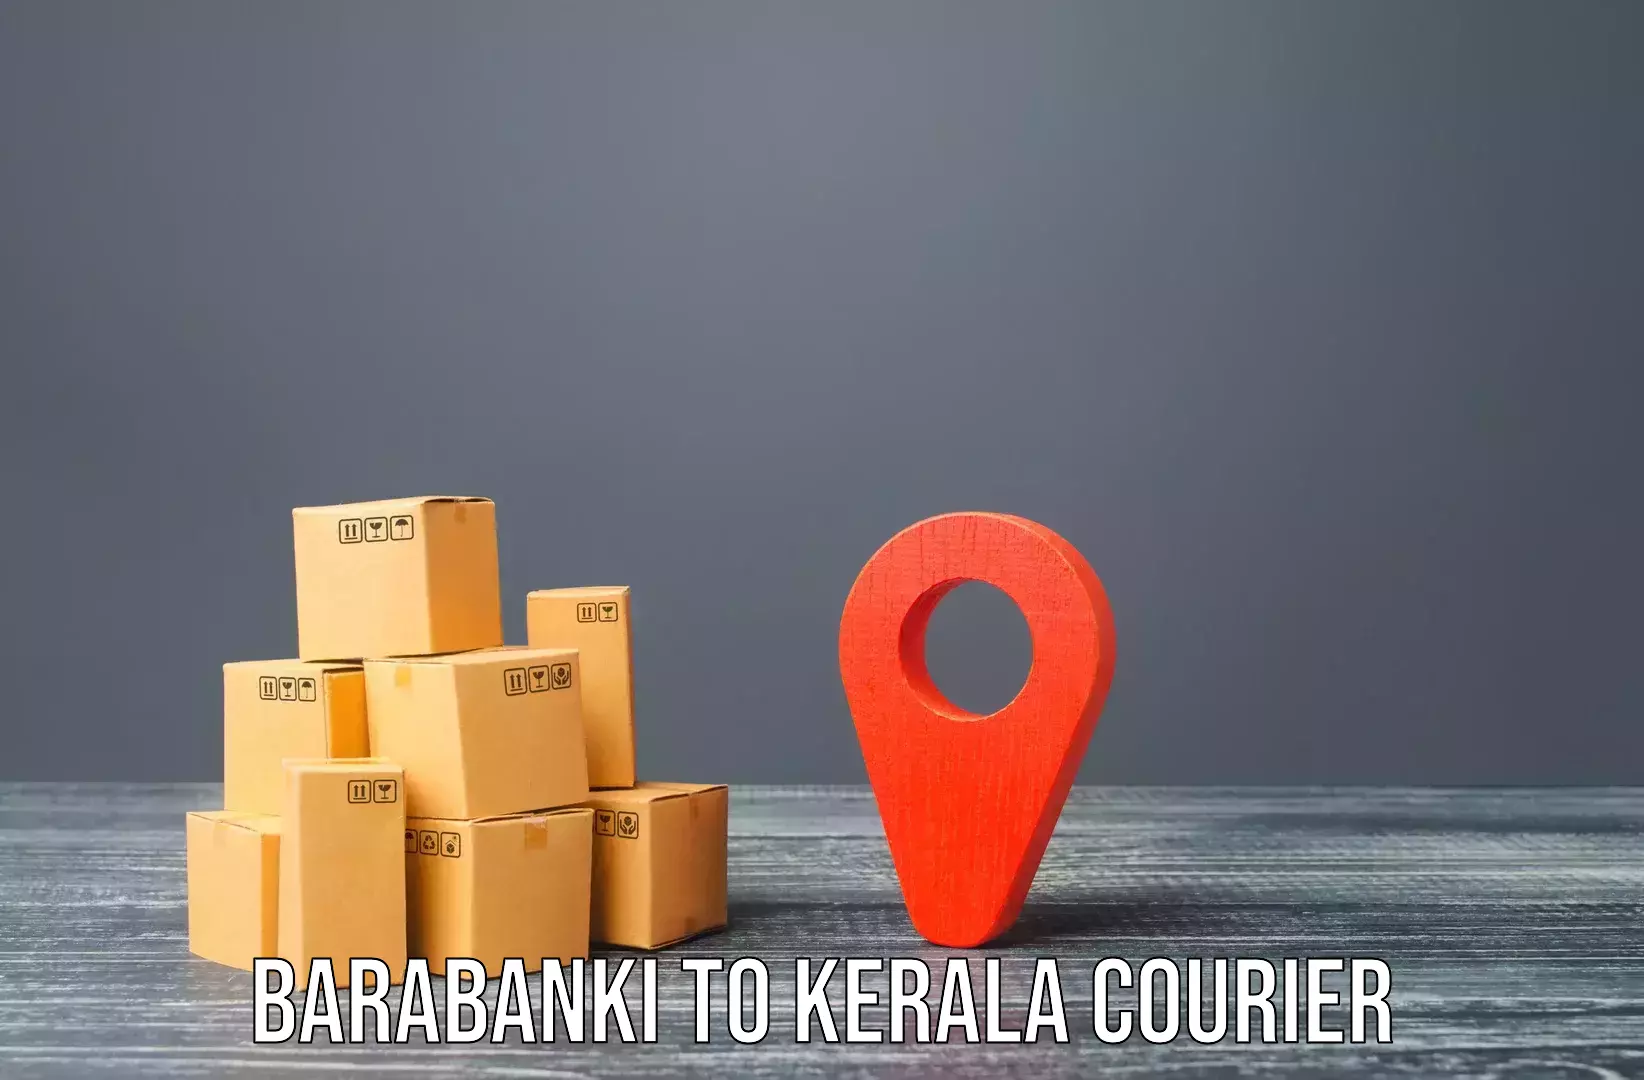 Skilled furniture transporters Barabanki to Palai